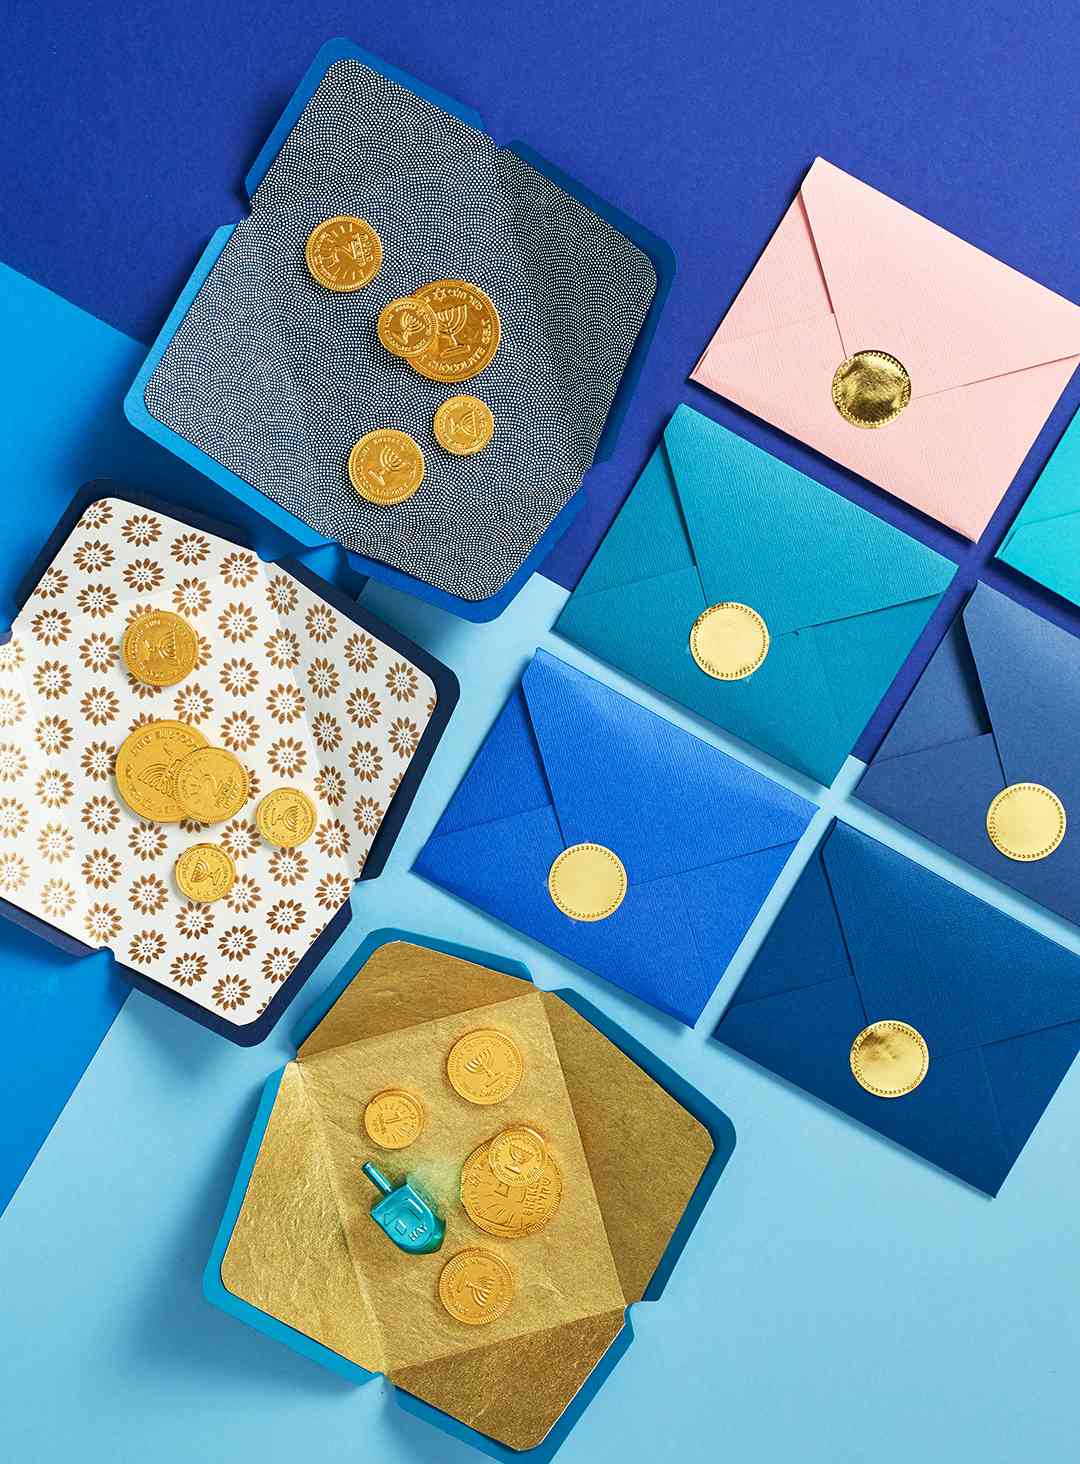 candies inside of hanukkah envelopes